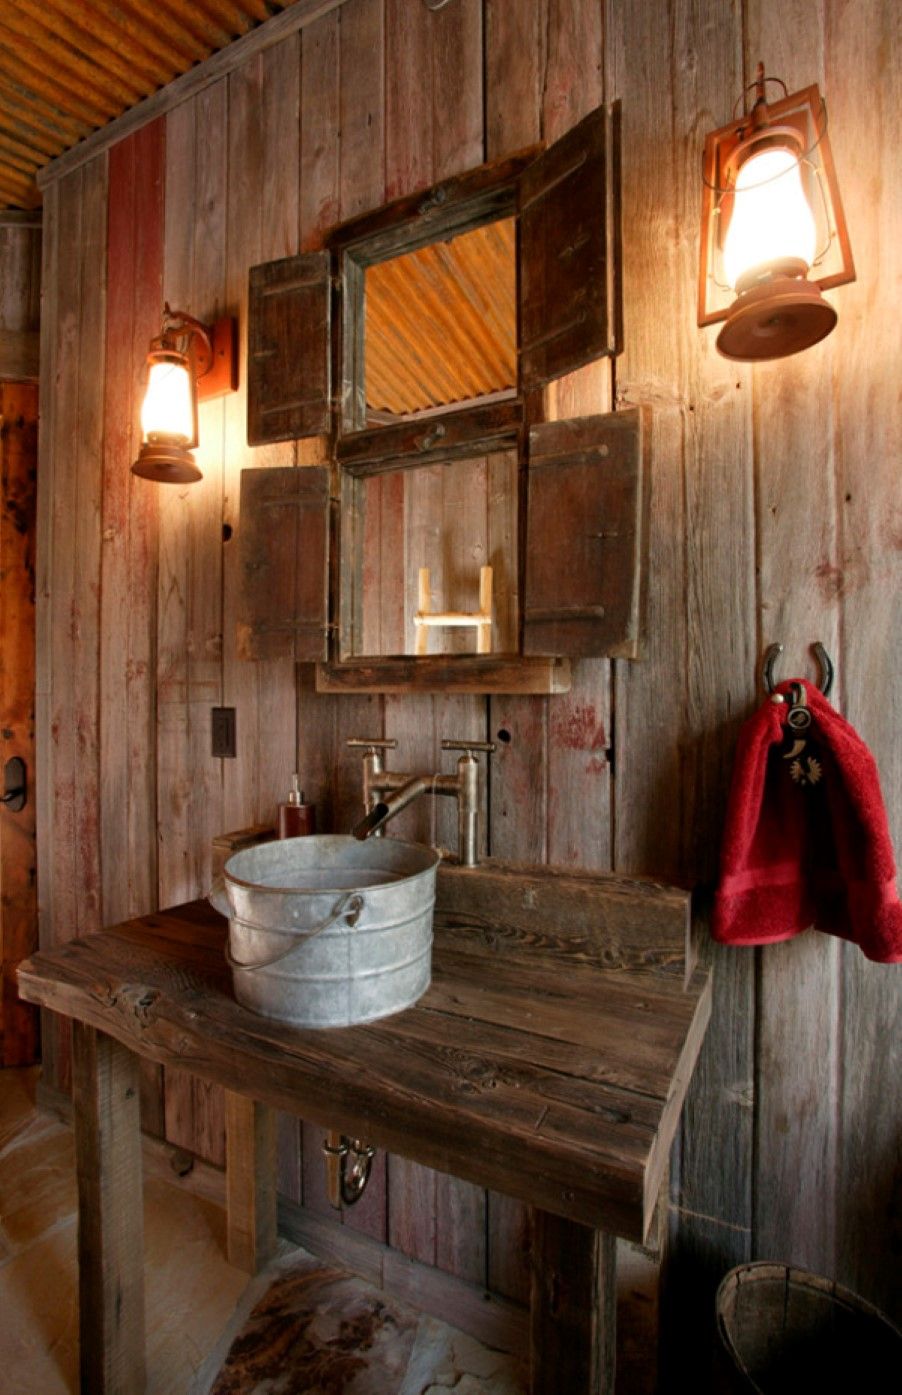 Ванная комната с деревенским декором